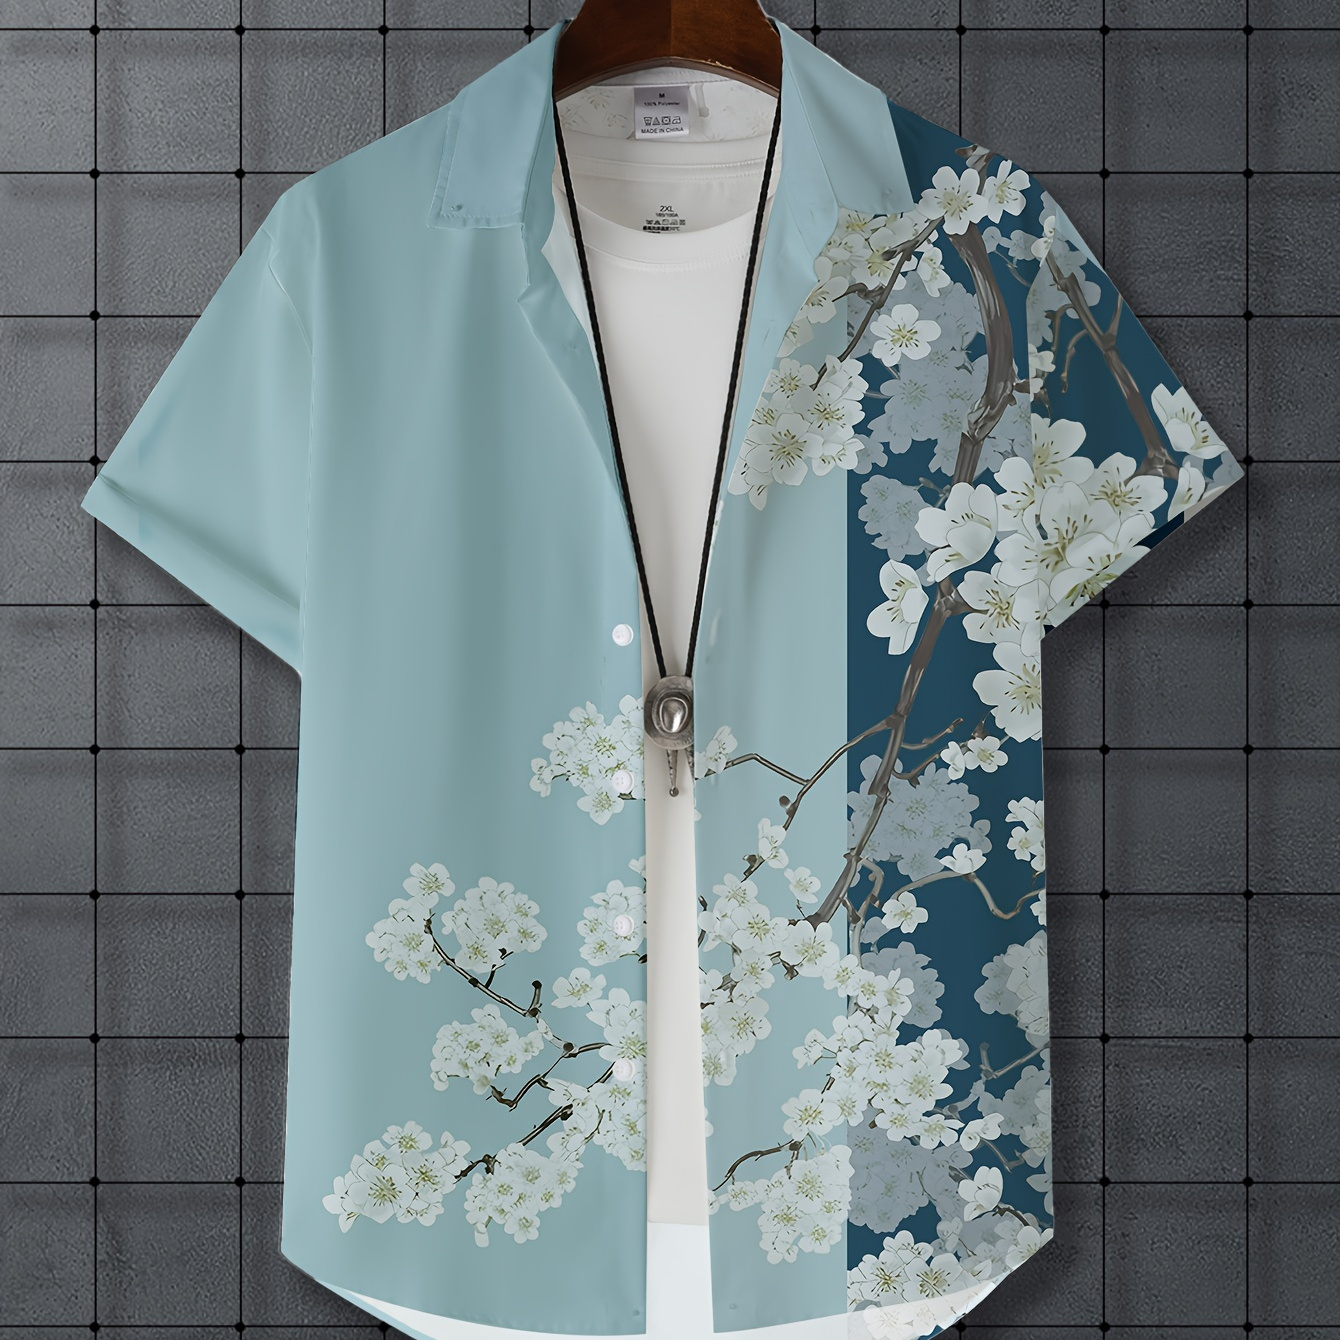 

Floral Print Hawaiian Shirt, Men's Casual Button Up Short Sleeve Shirt For Summer Beach Vacation Resort